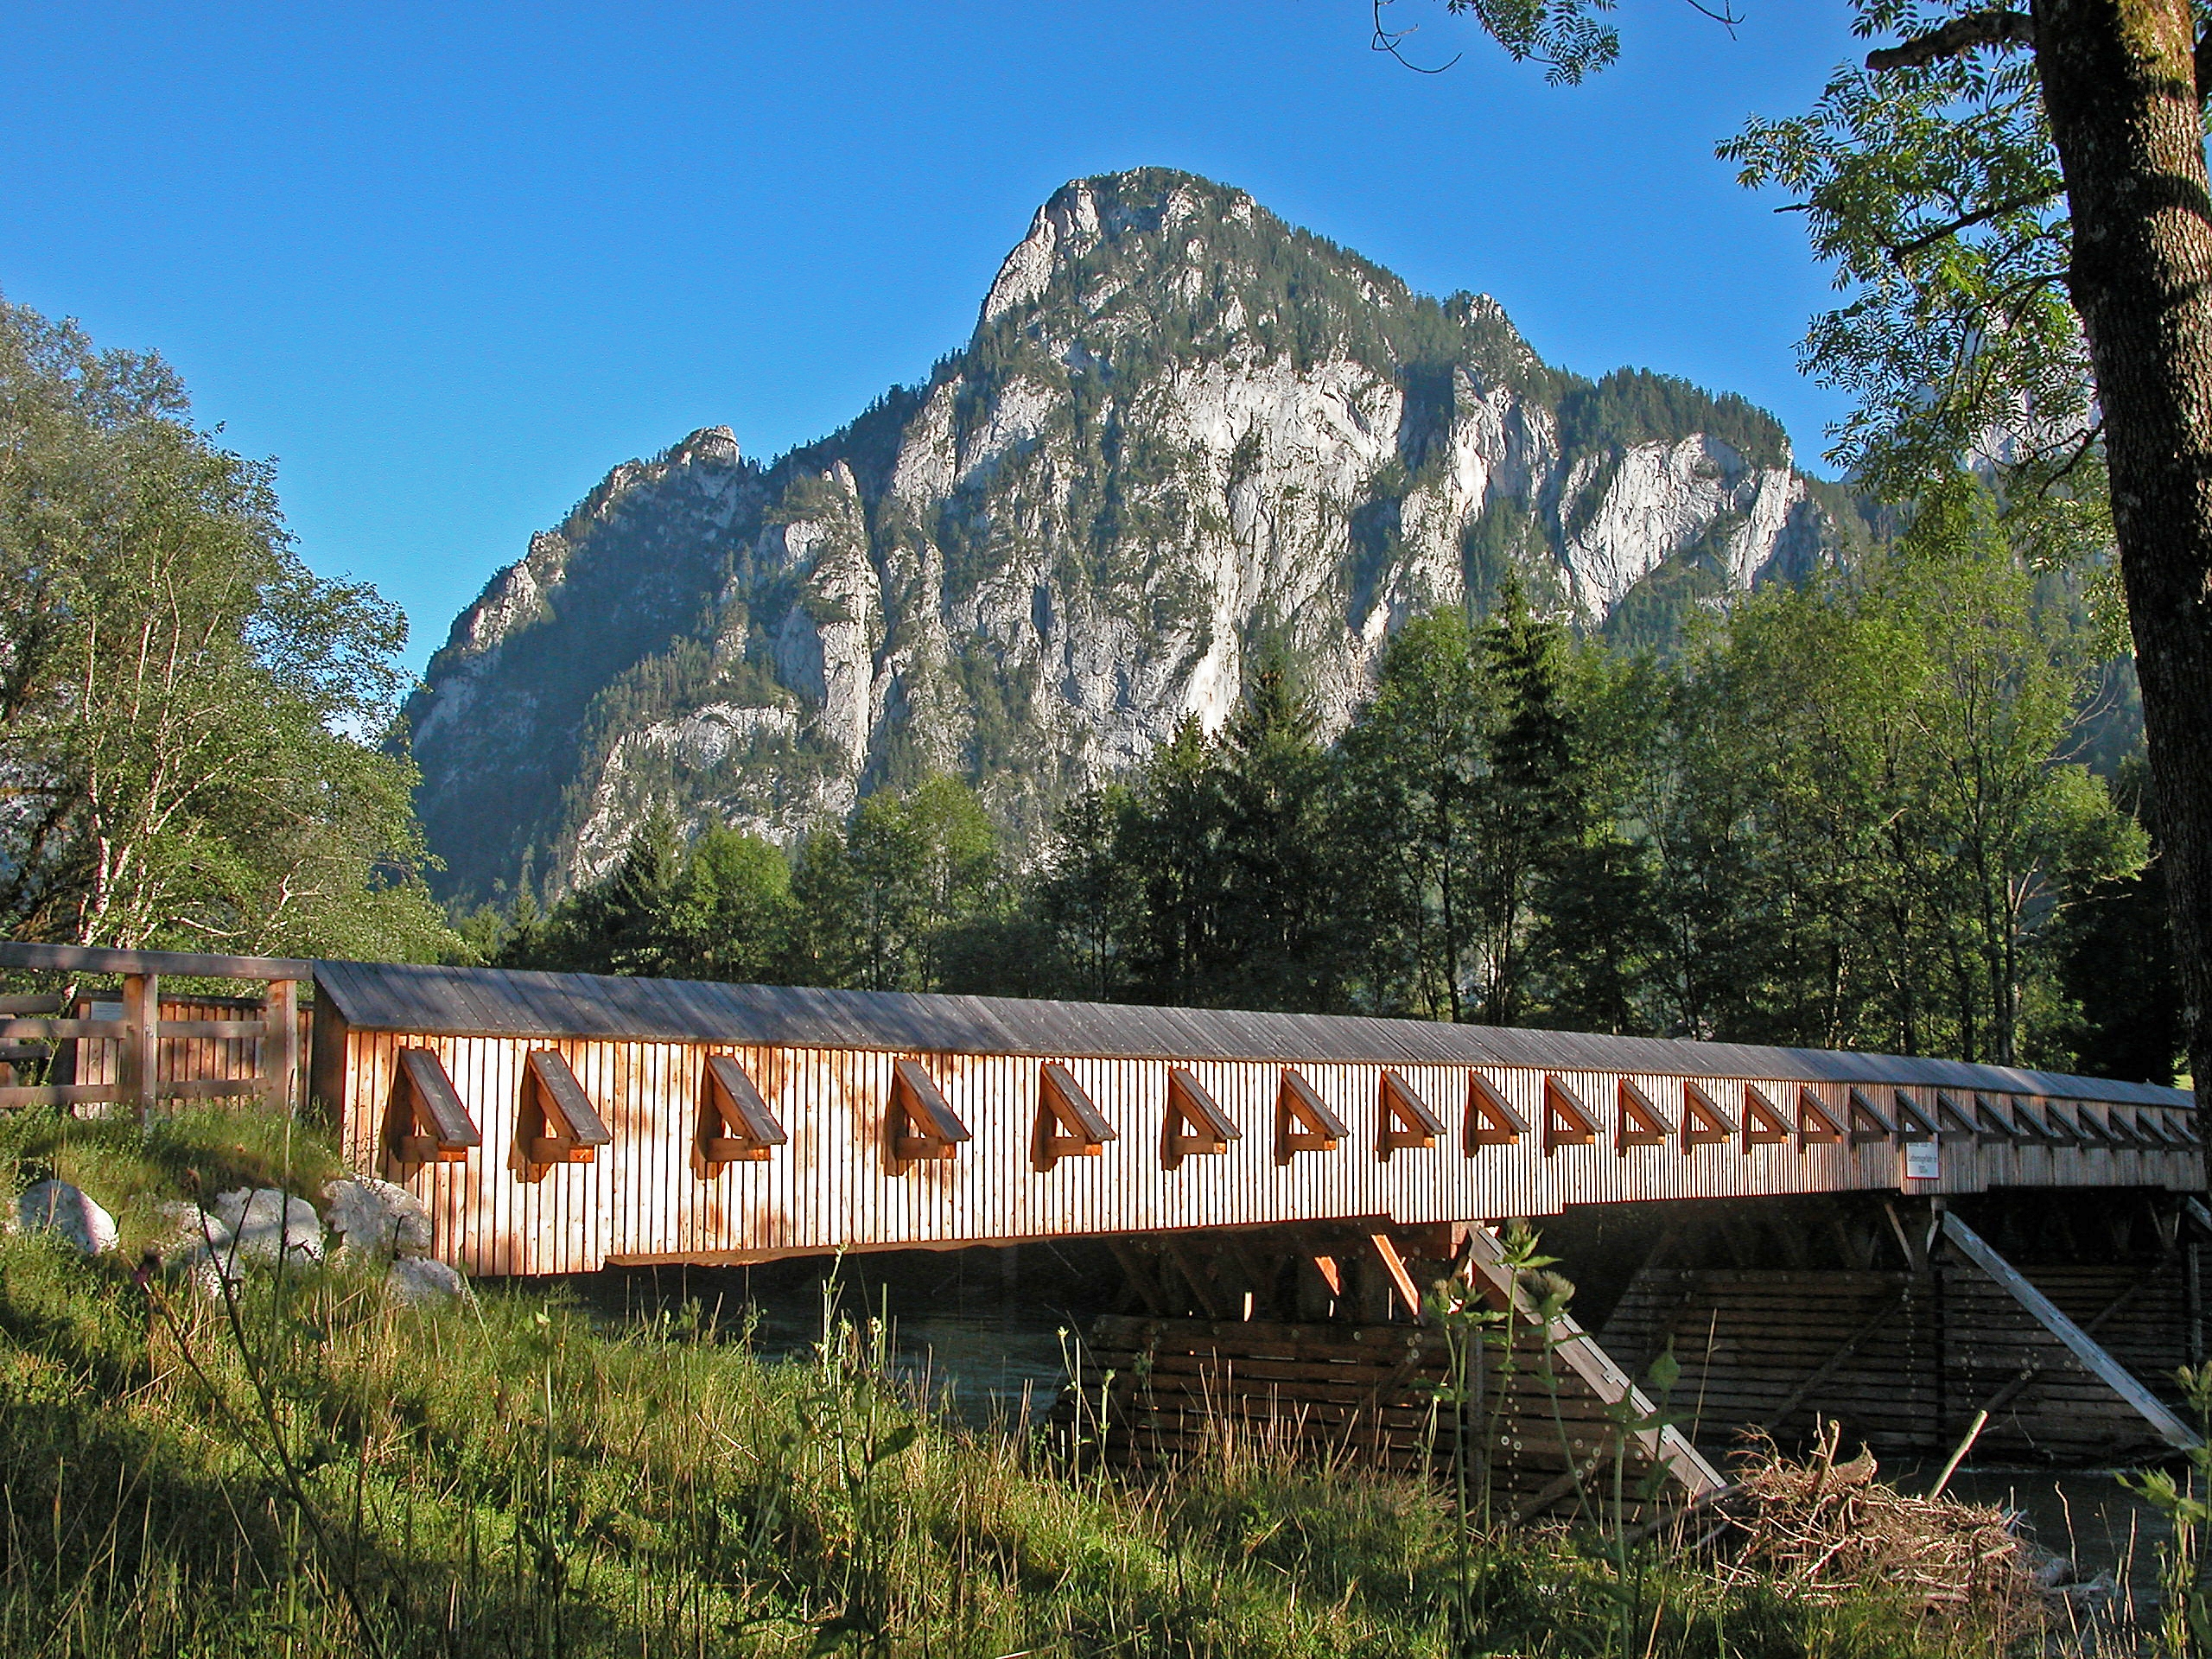 Lauferbauerbrücke